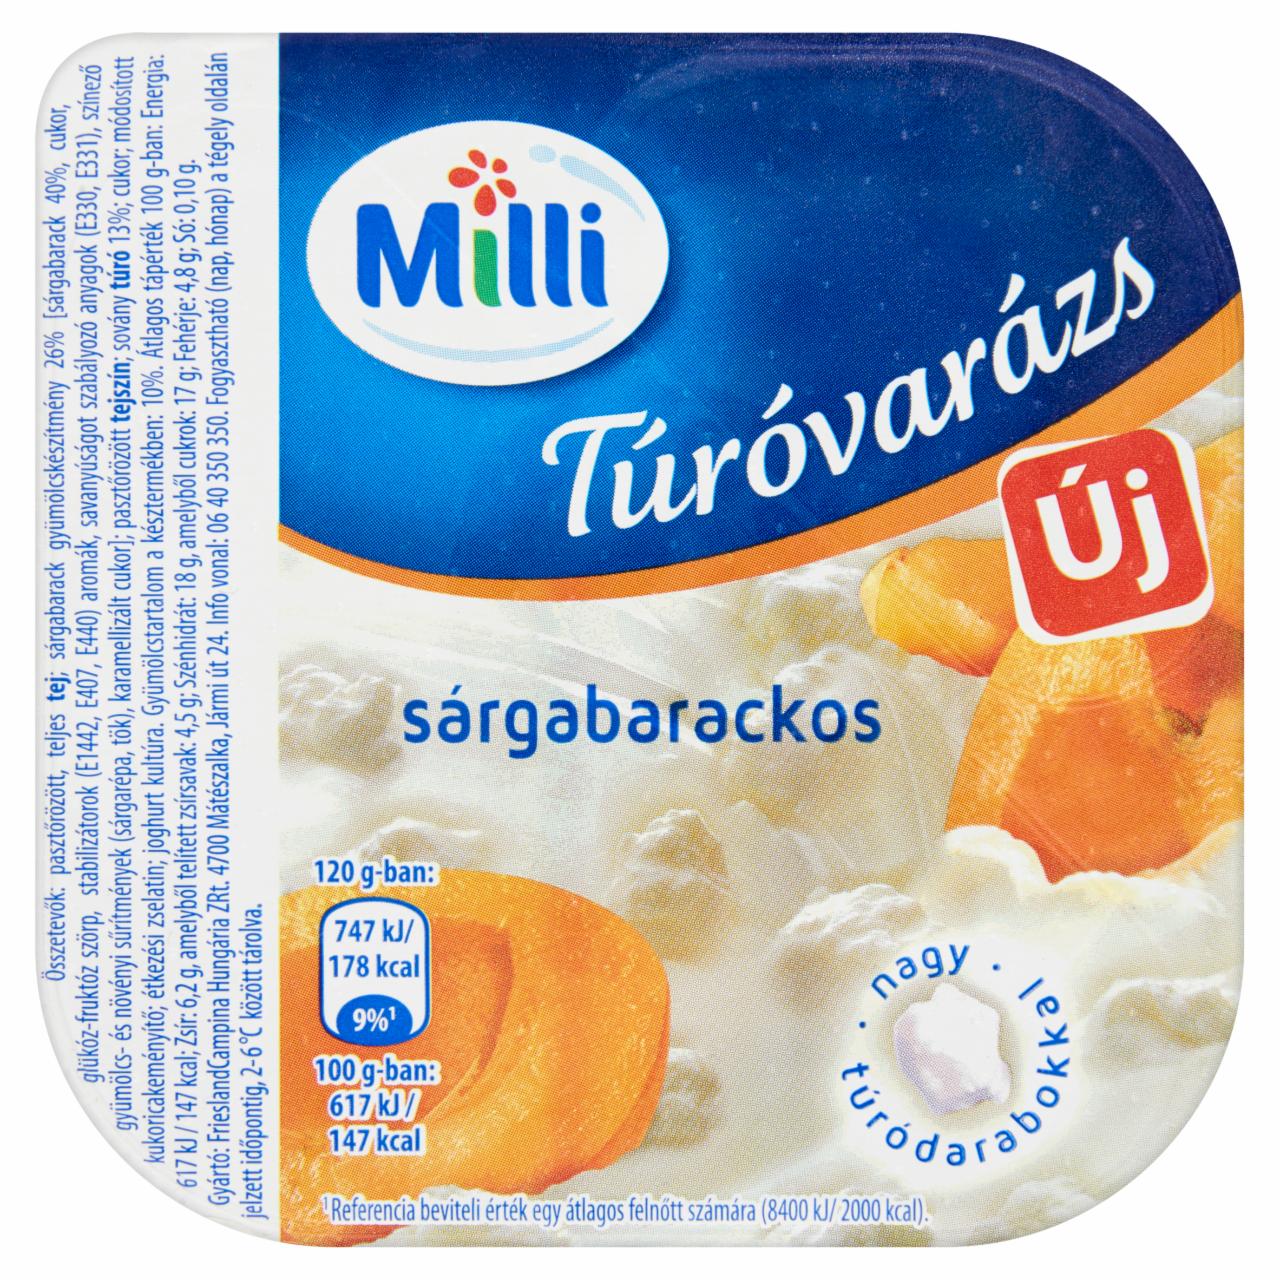 Képek - Milli Túróvarázs sárgabarackos desszert 120 g